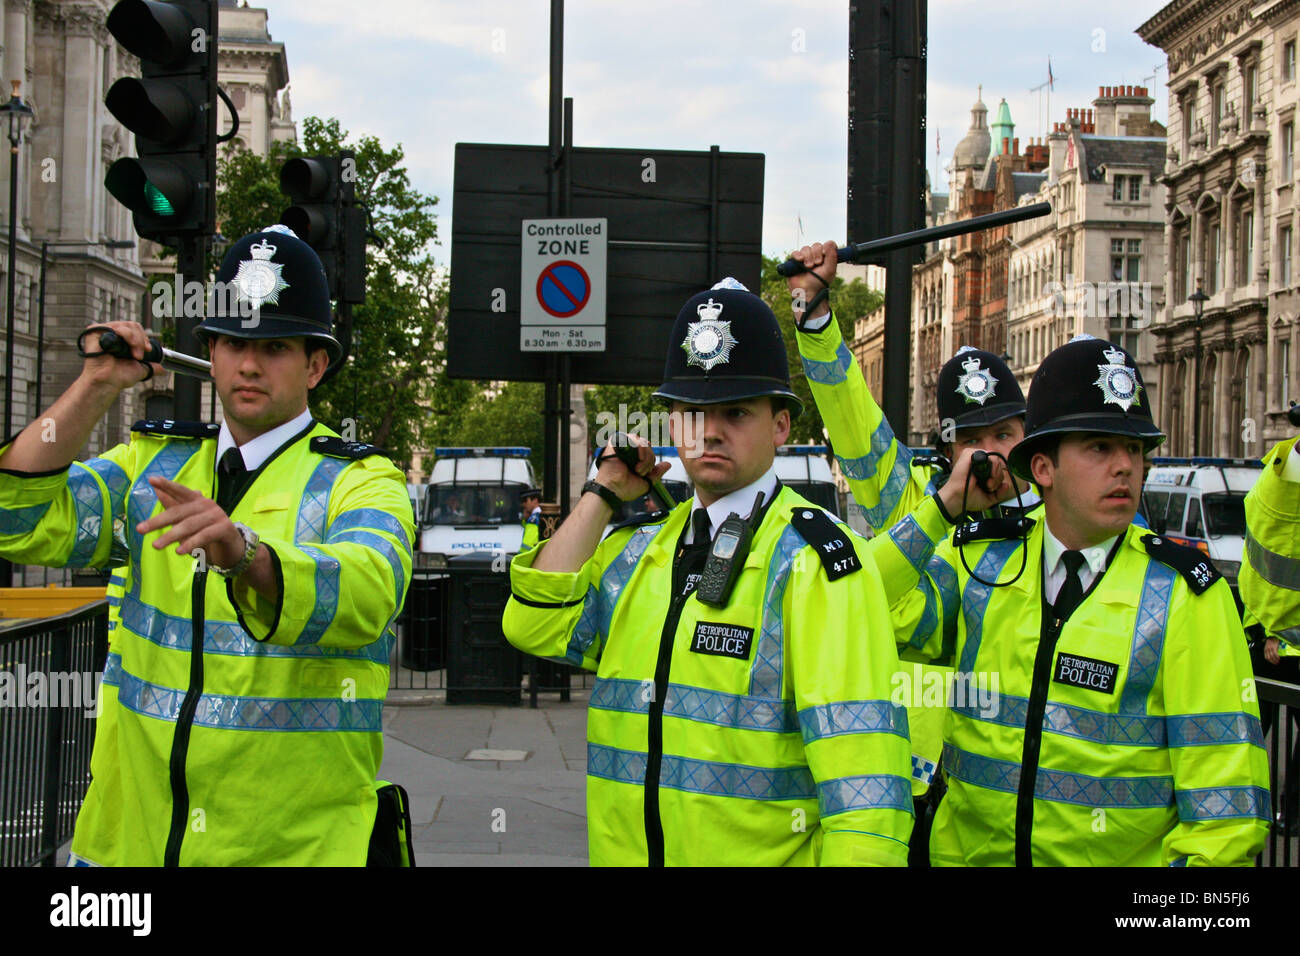 Soulever leurs matraques de police de manifestants au cours d'une visite de l'ancien président américain George Bush à Londres en 2008. Banque D'Images